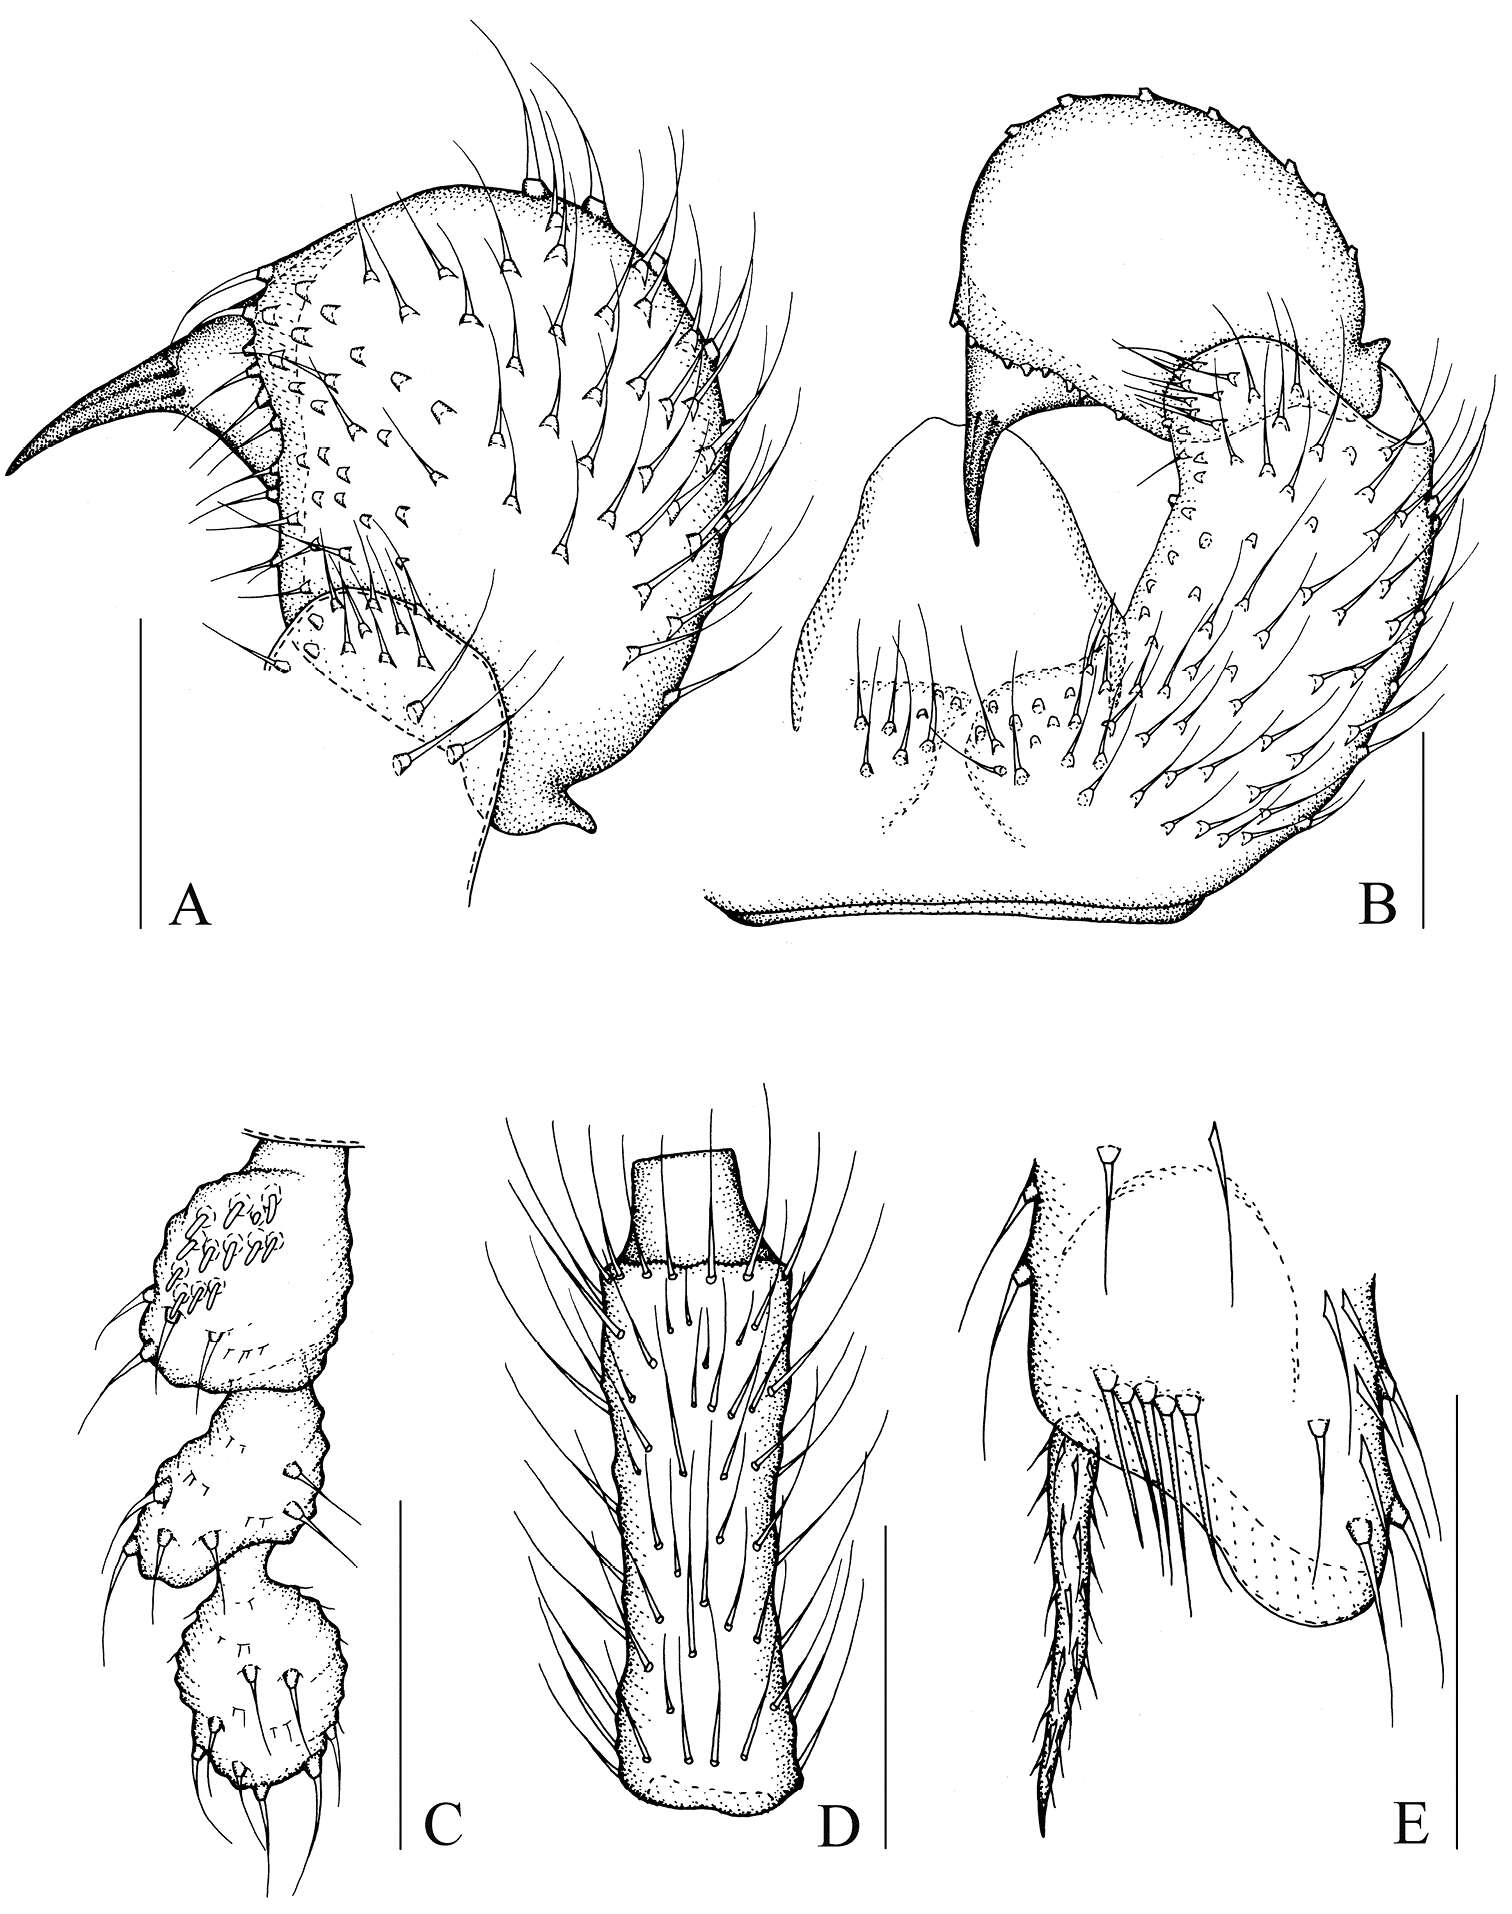 Image of Peyerimhoffia shennongjiana Shi, Huang, Zhang & Wu 2014